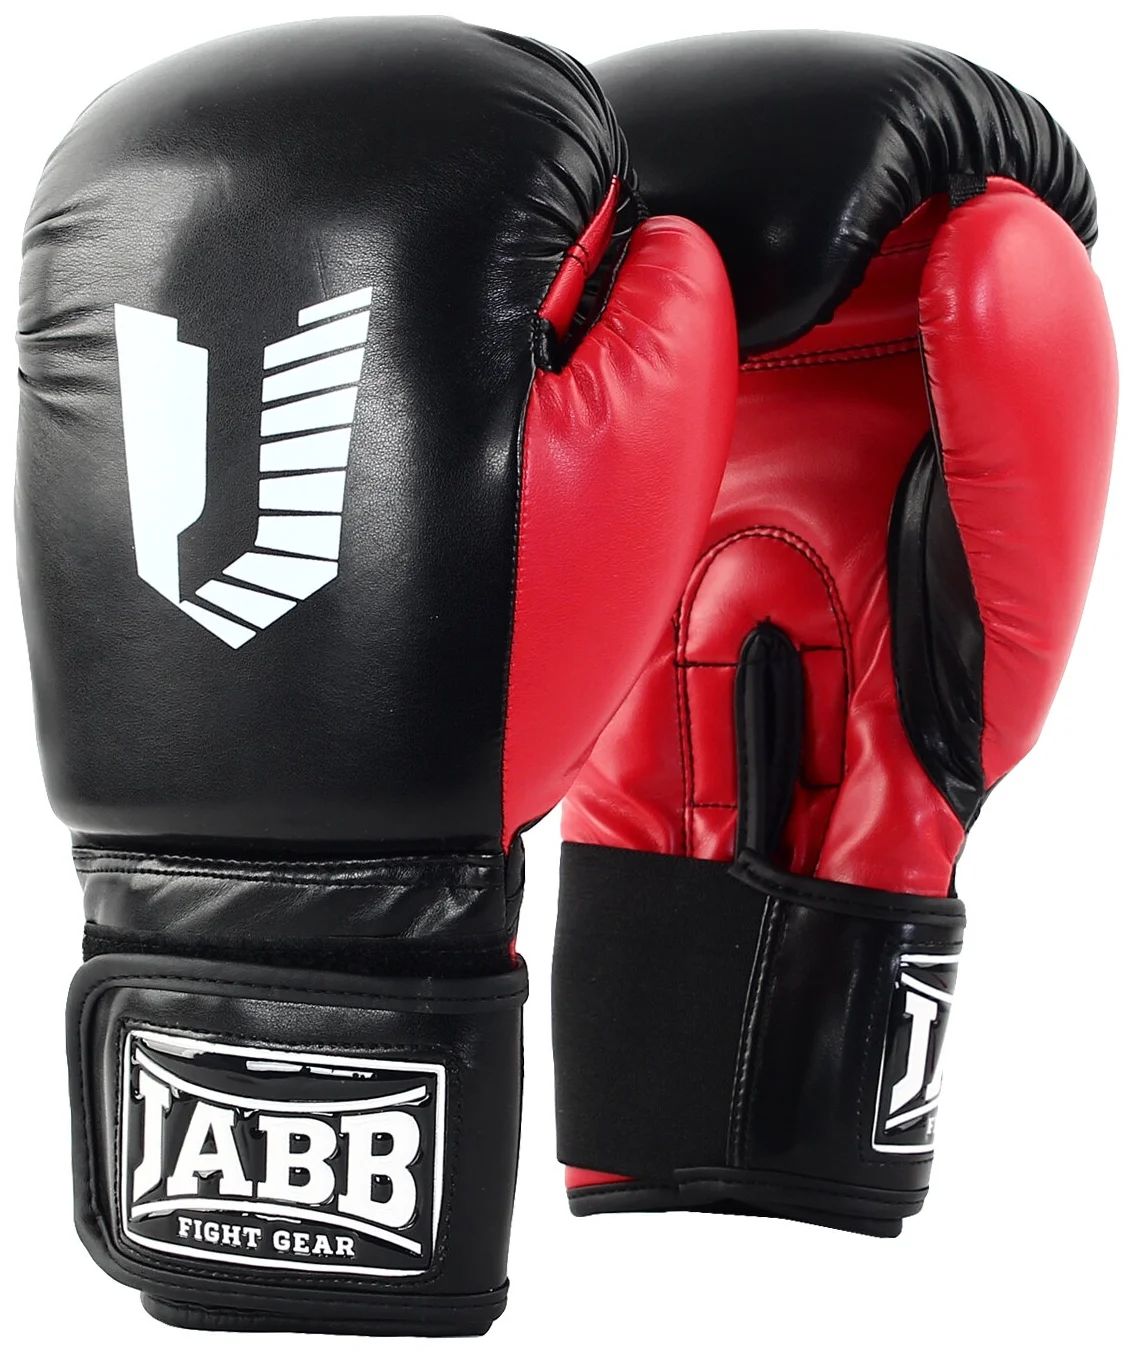 Перчатки бокс.(иск.кожа) Jabb JE-4056/Eu 56 черный/красный 12ун.